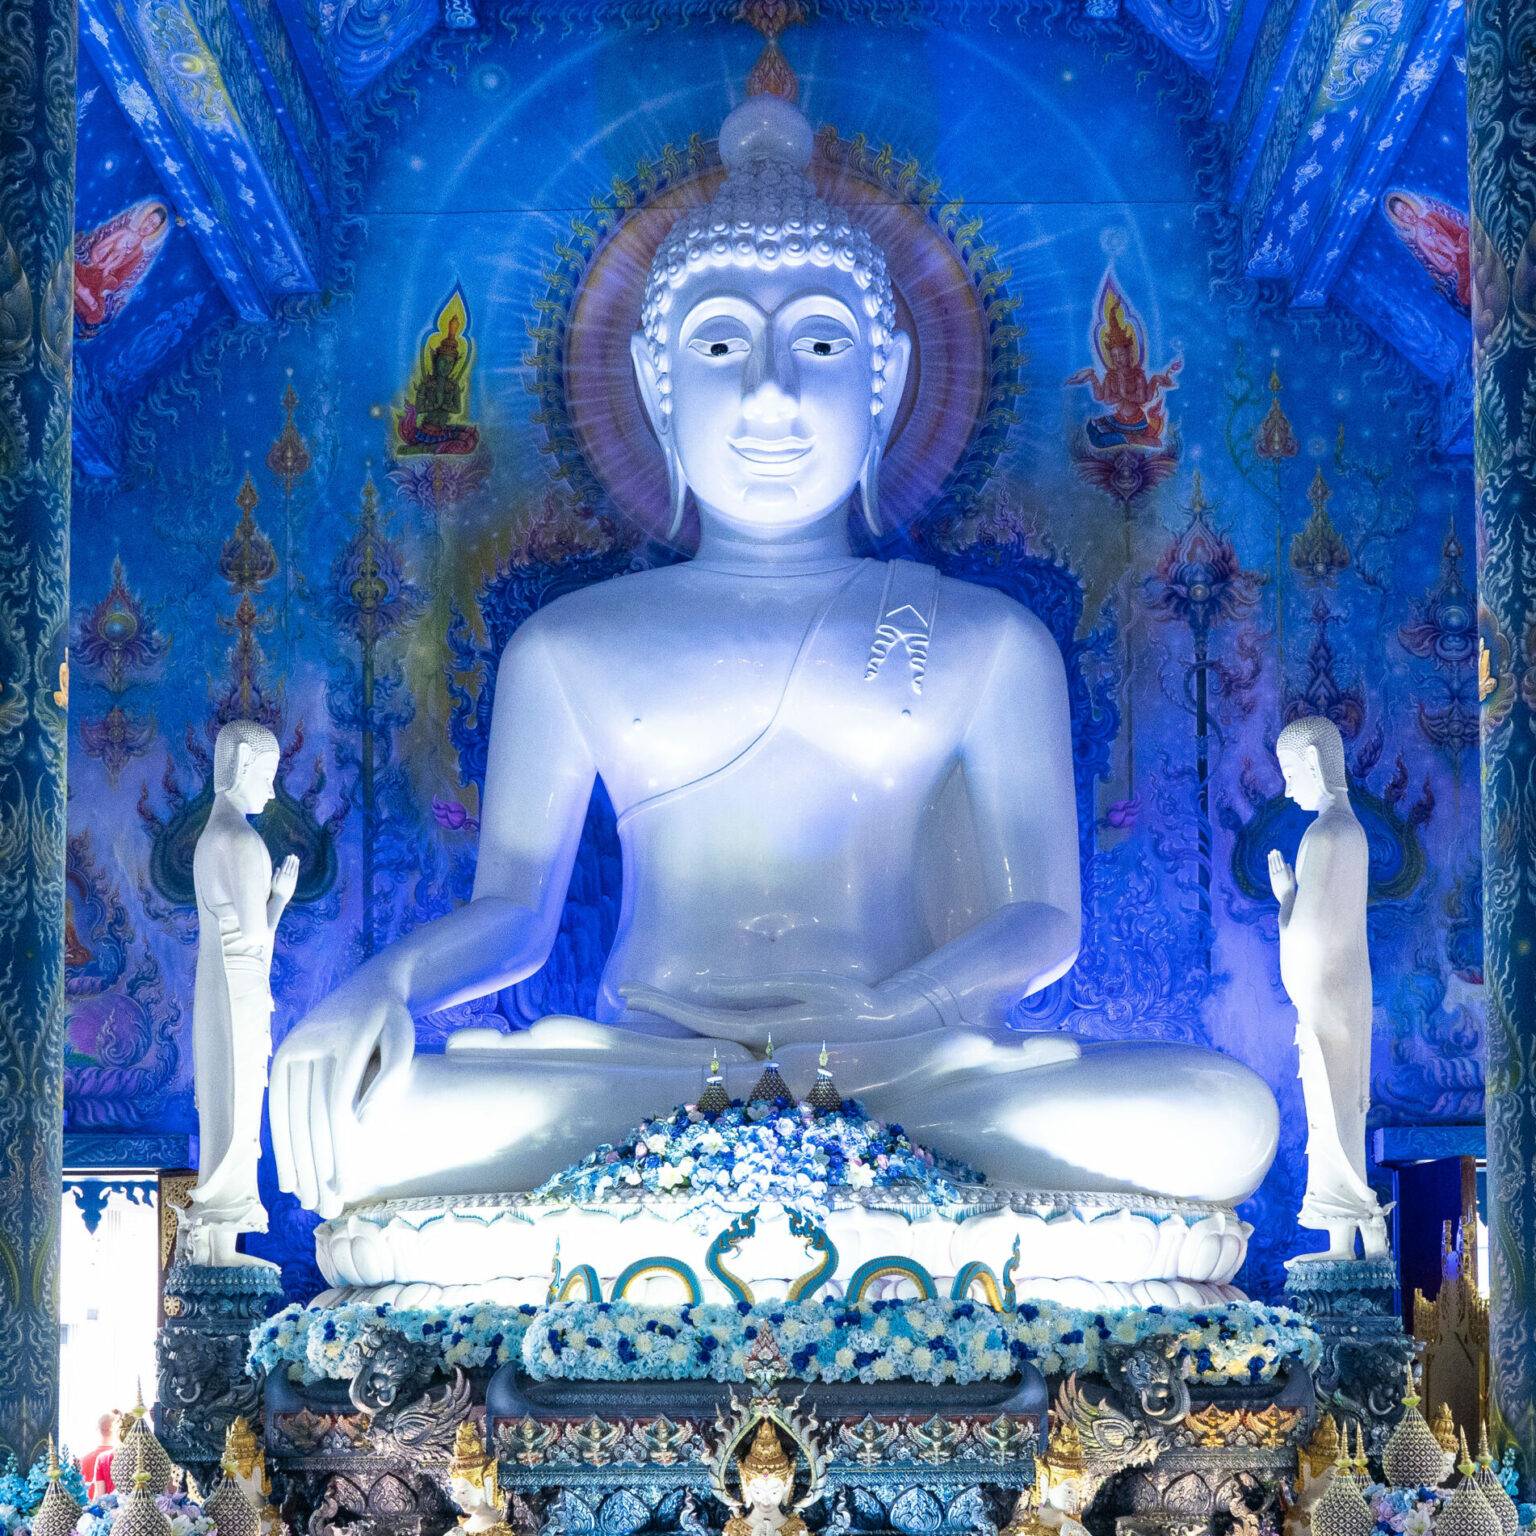 Das innere des blauen Tempels dominiert eine im Schneidersitz sitzende weiße Buddha-Statue.